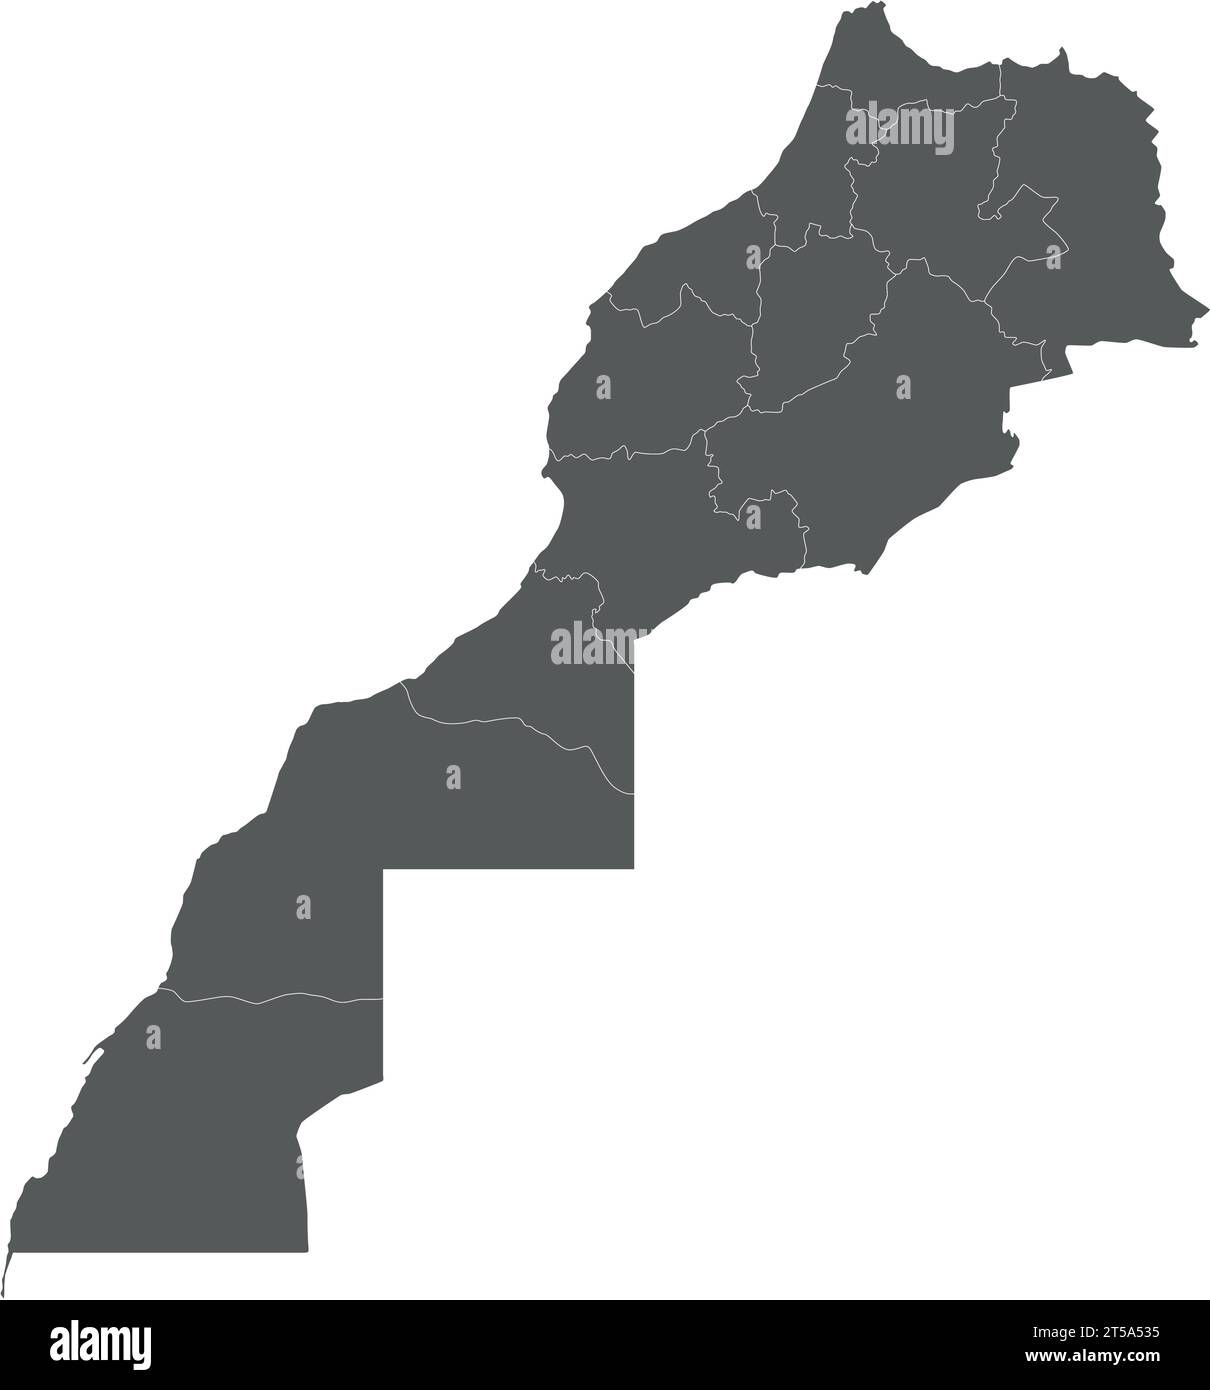 Mappa vettoriale vuota del Marocco con regioni e divisioni amministrative. Livelli modificabili e chiaramente etichettati. Illustrazione Vettoriale